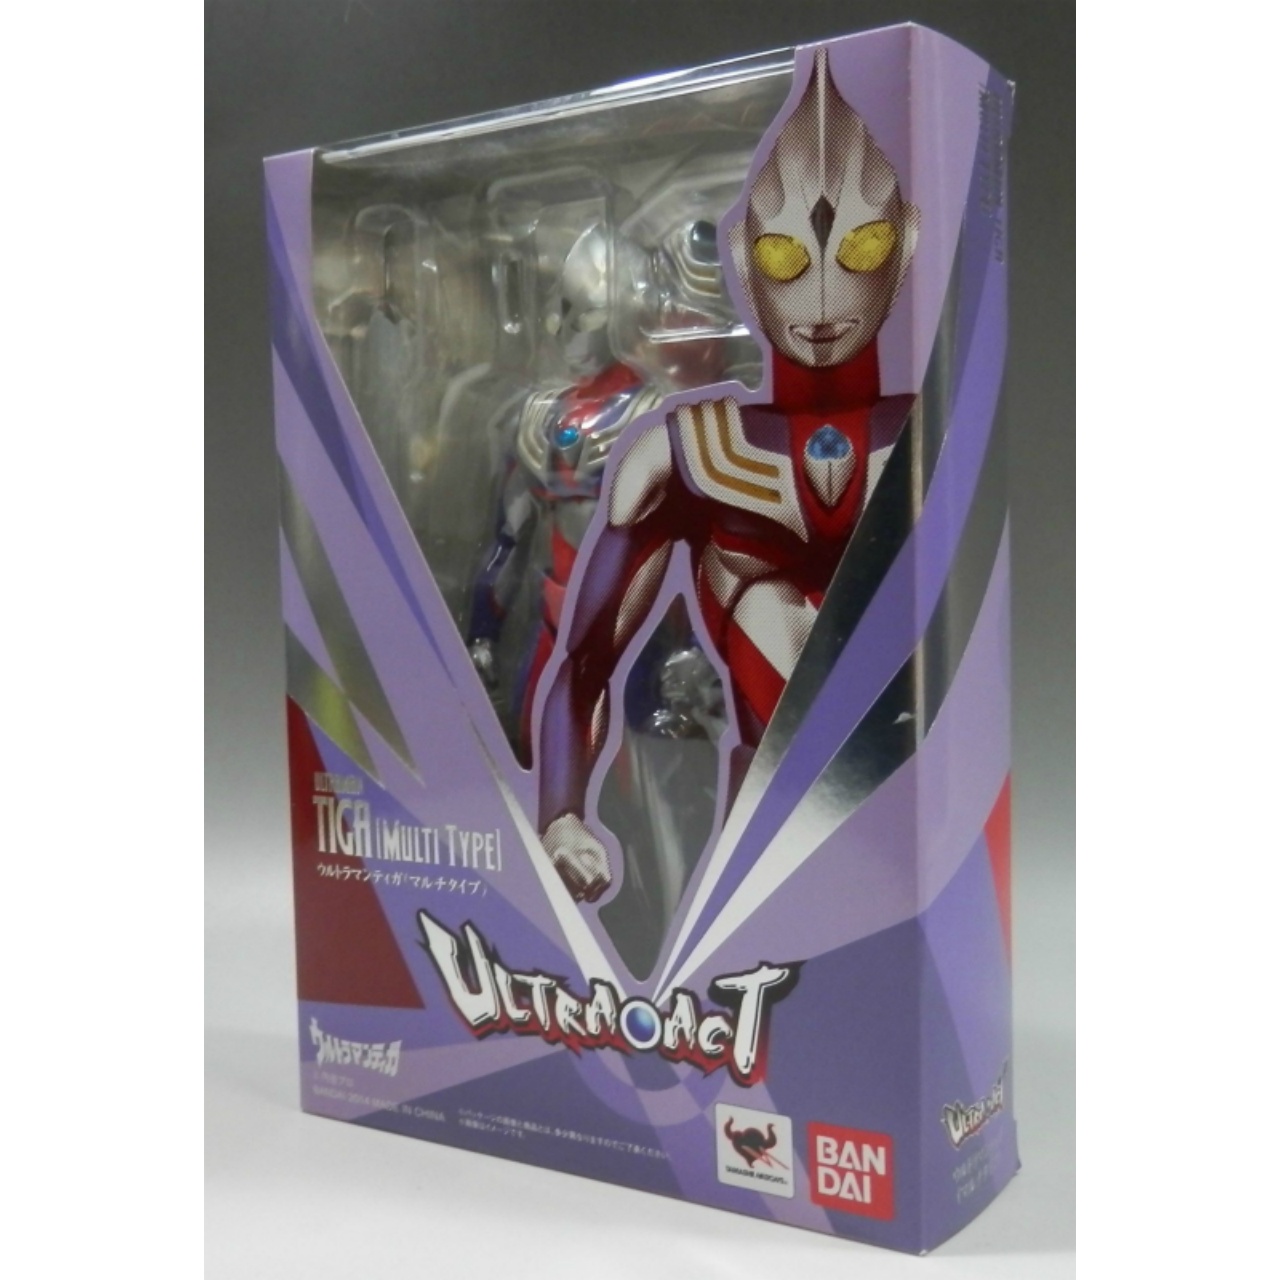 ULTRA-ACT - Ultraman Tiga Multi Type Renewal Edition